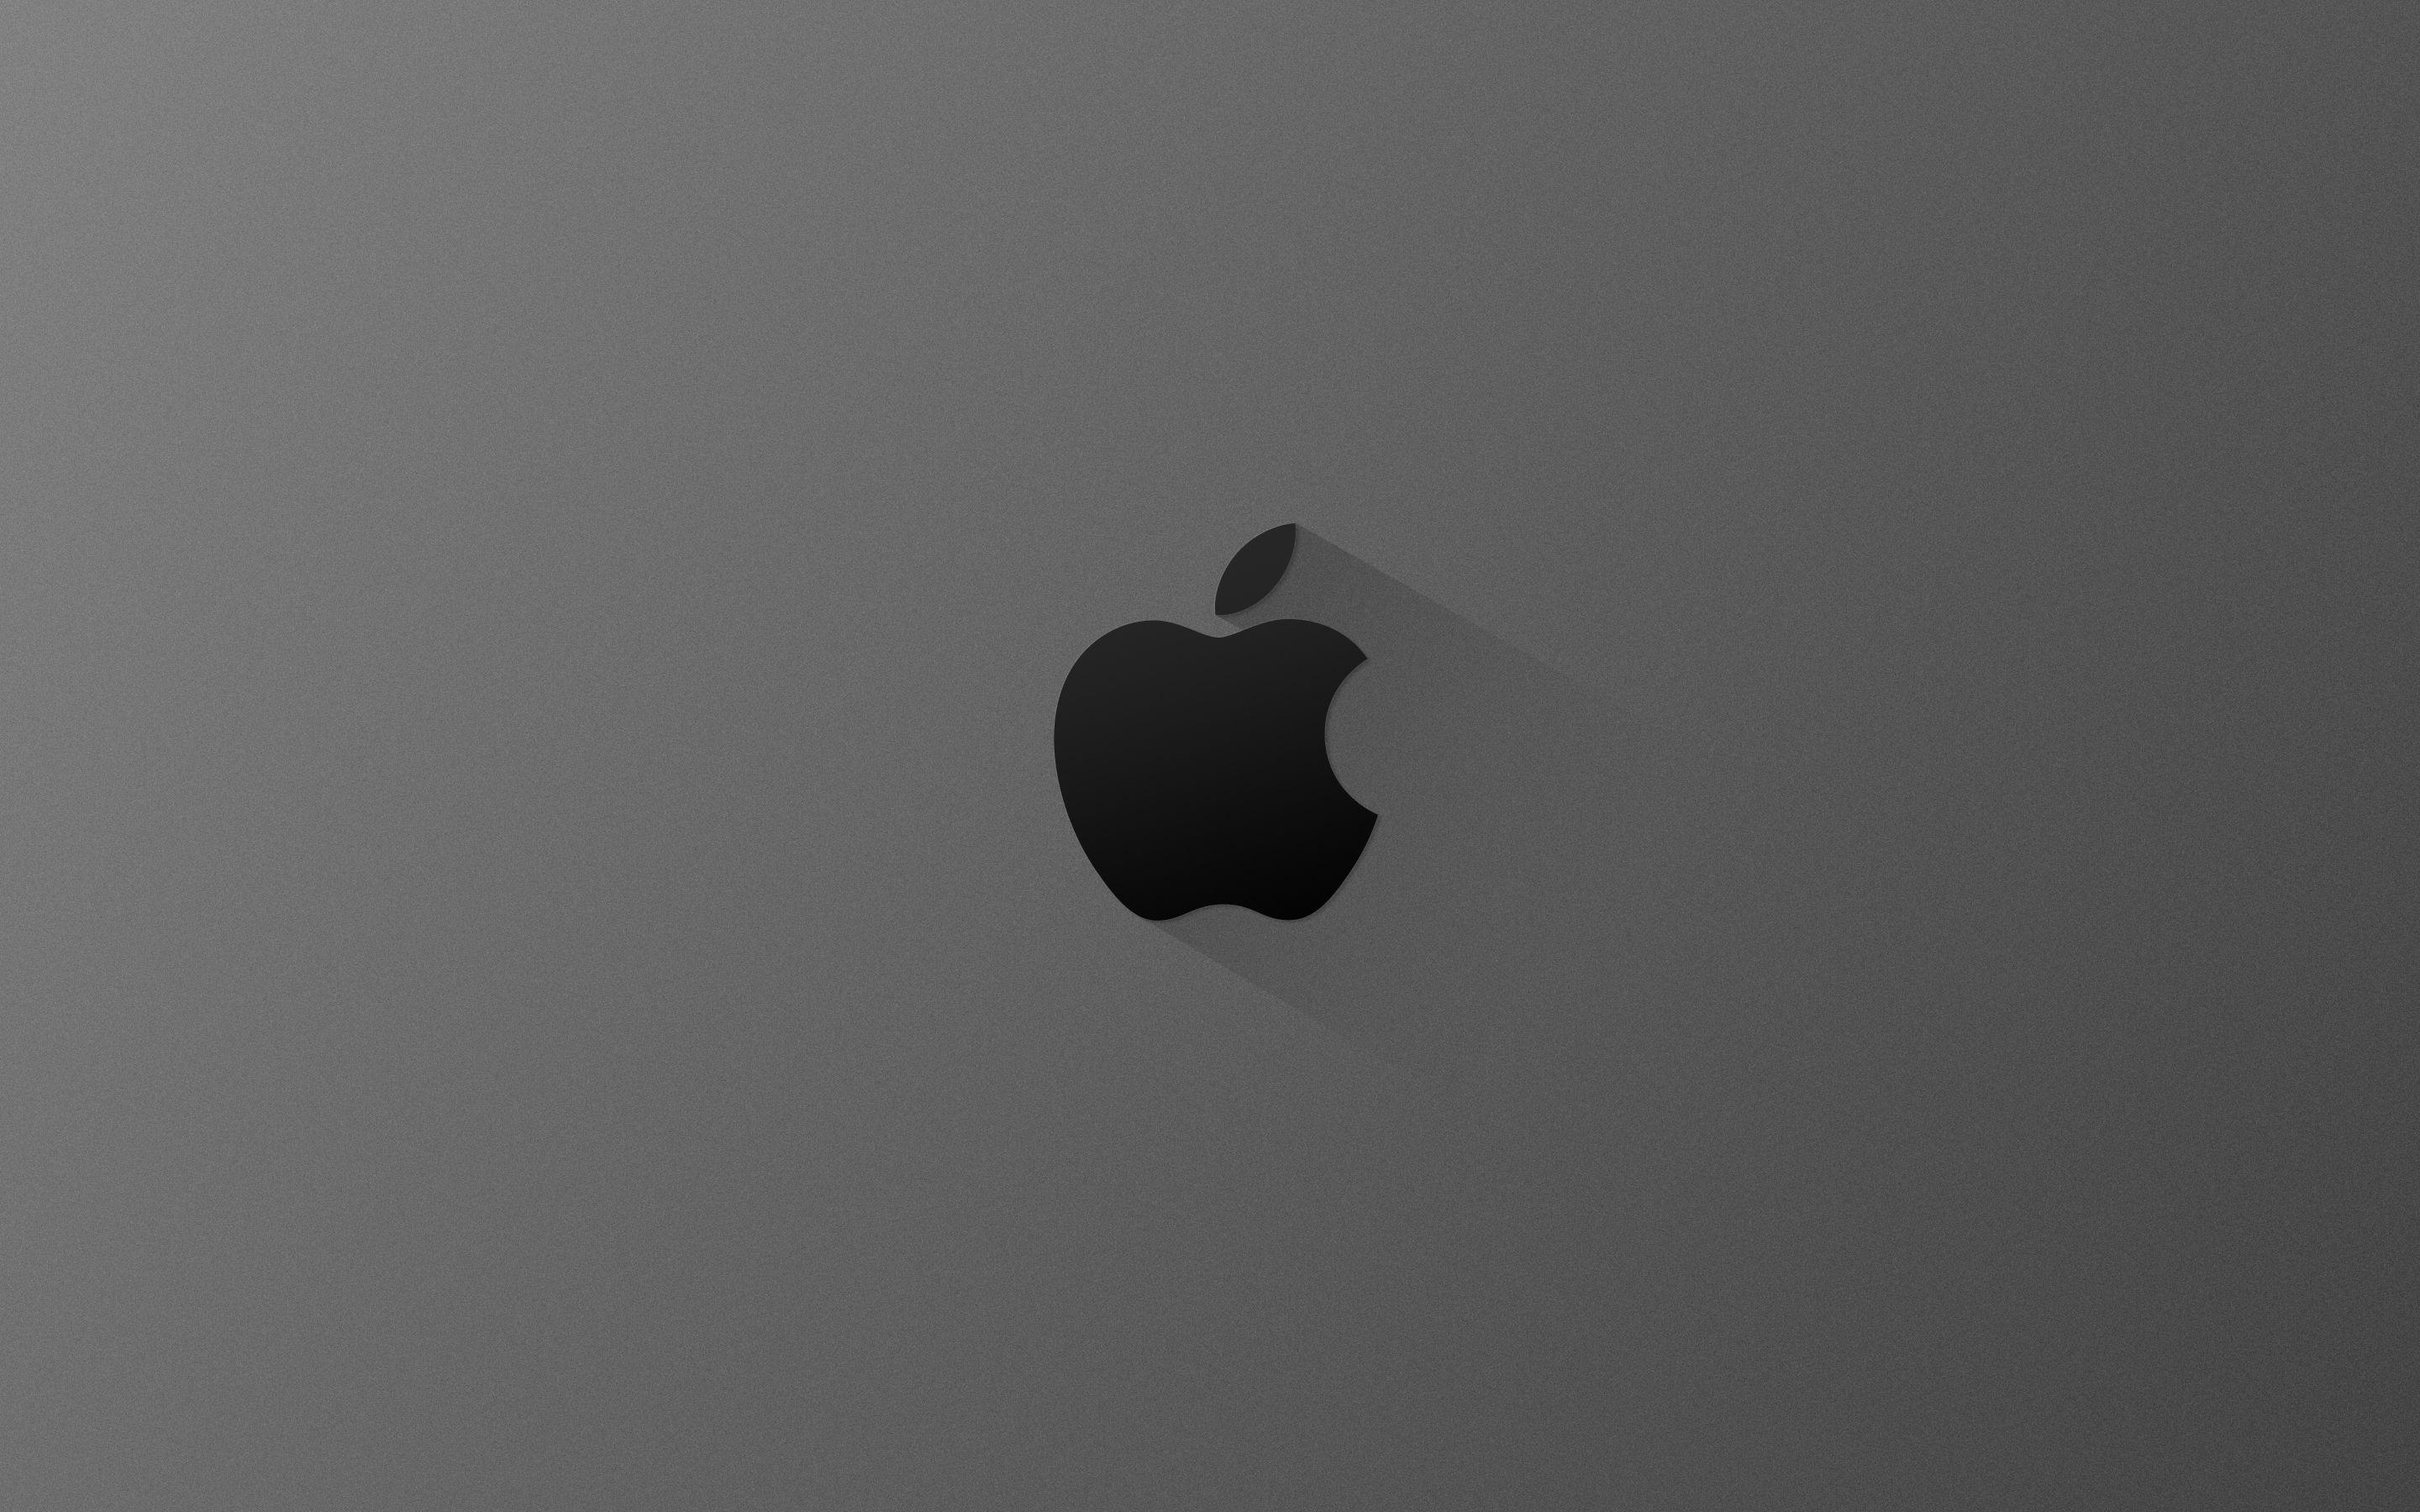 MacBook Pro Apple Logo Wallpapers - Top Free MacBook Pro Apple Logo ...